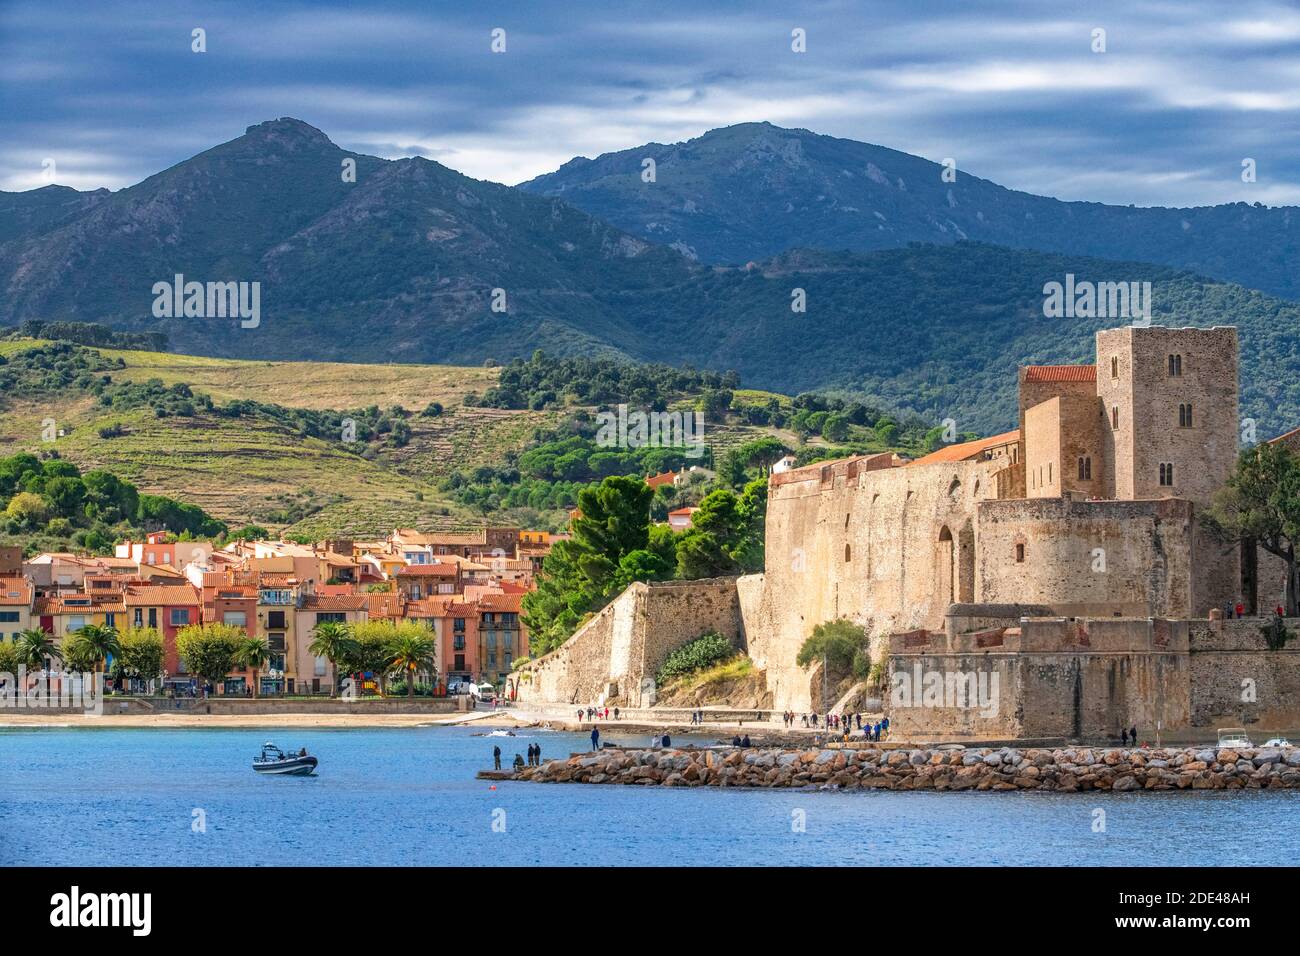 Castello reale di Collioure e paesaggio spiaggia di mare del pittoresco villaggio di Colliure, vicino Perpignan a sud della Francia Languedoc-Roussillon C. Foto Stock